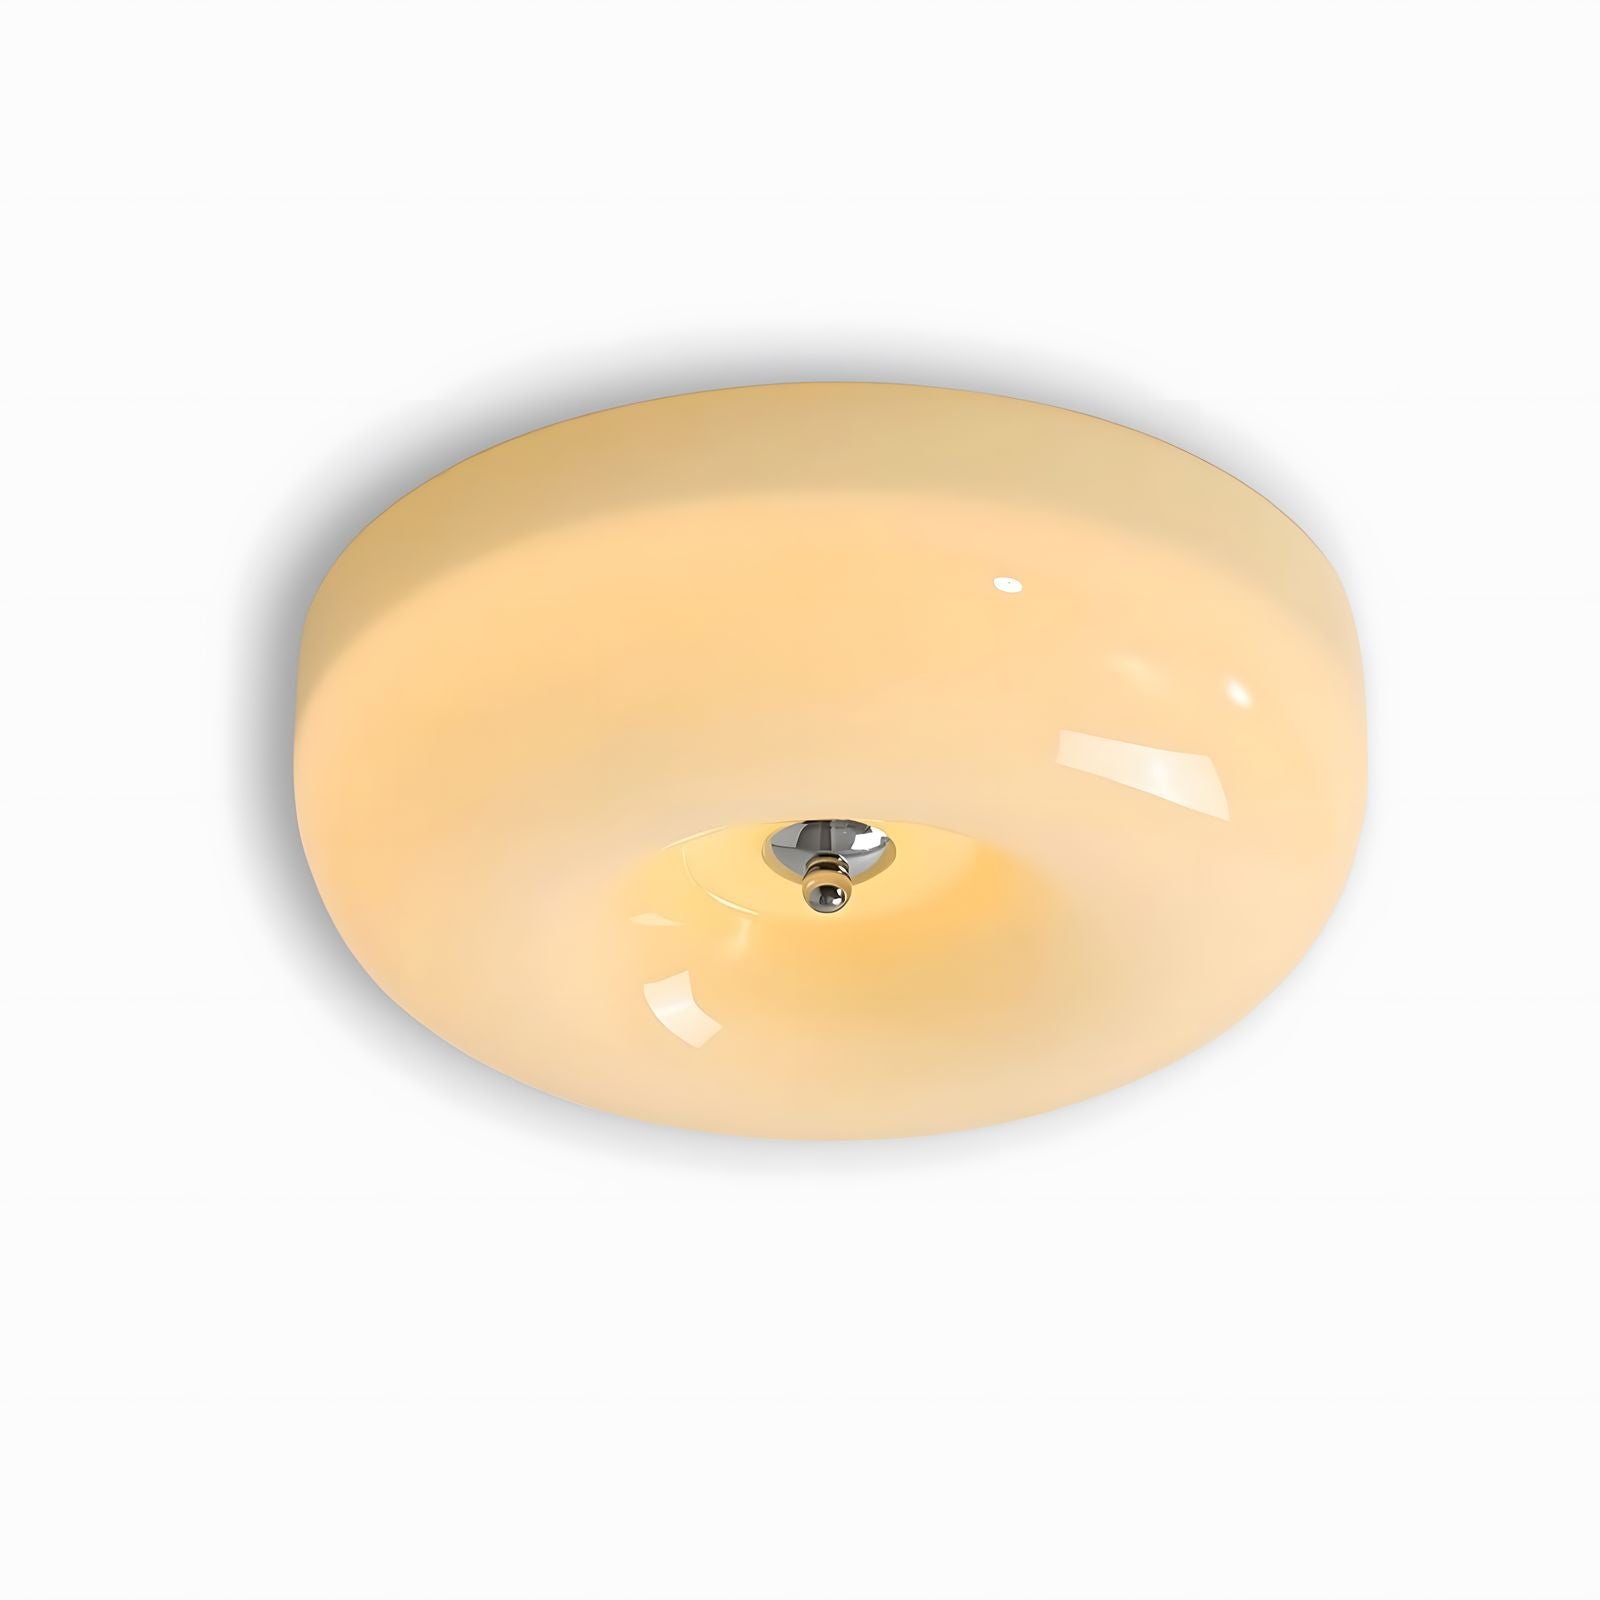 Cream Pudding Ceiling Lamp - Vinlighting